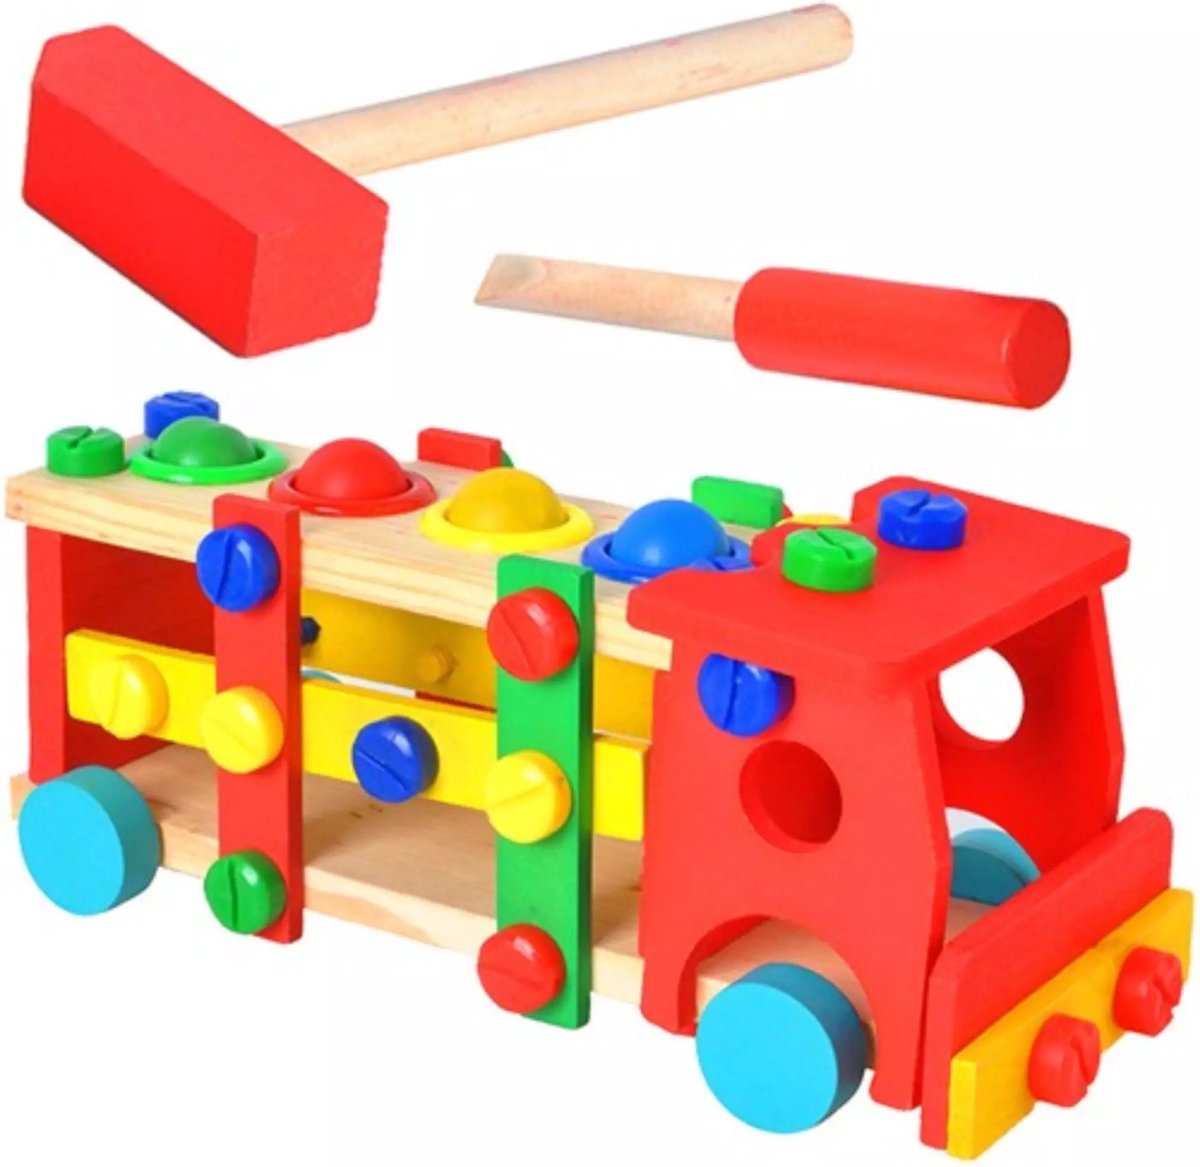 Ruhhy Houten Educatieve Vrachtwagen - Speels en Leerzaam Speelgoed voor Kinderen